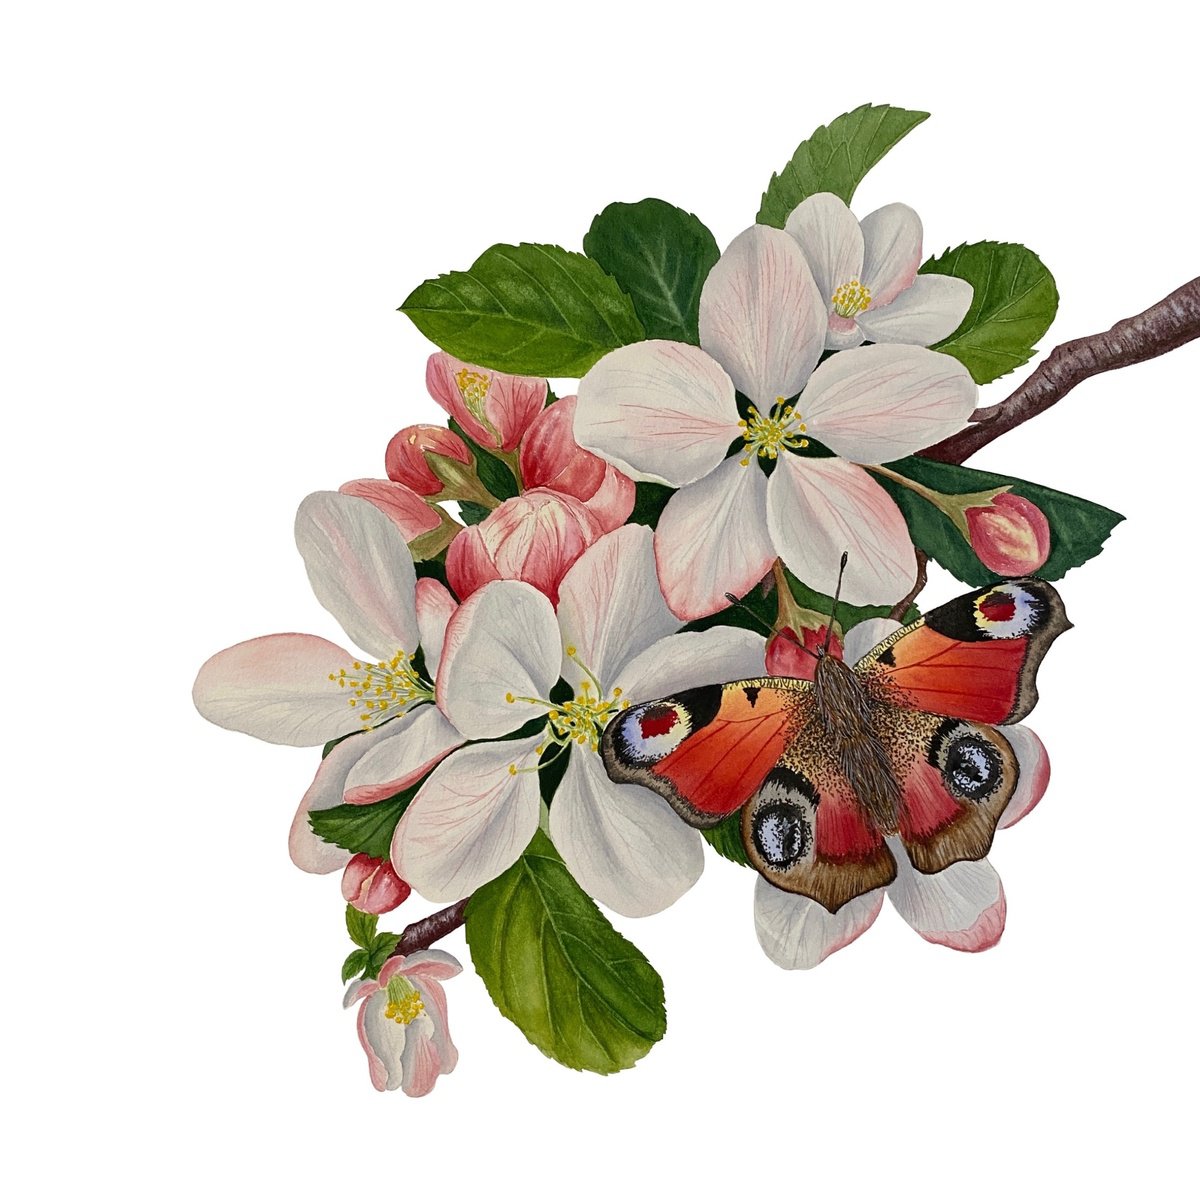 Apple blossom by Tina Shyfruk